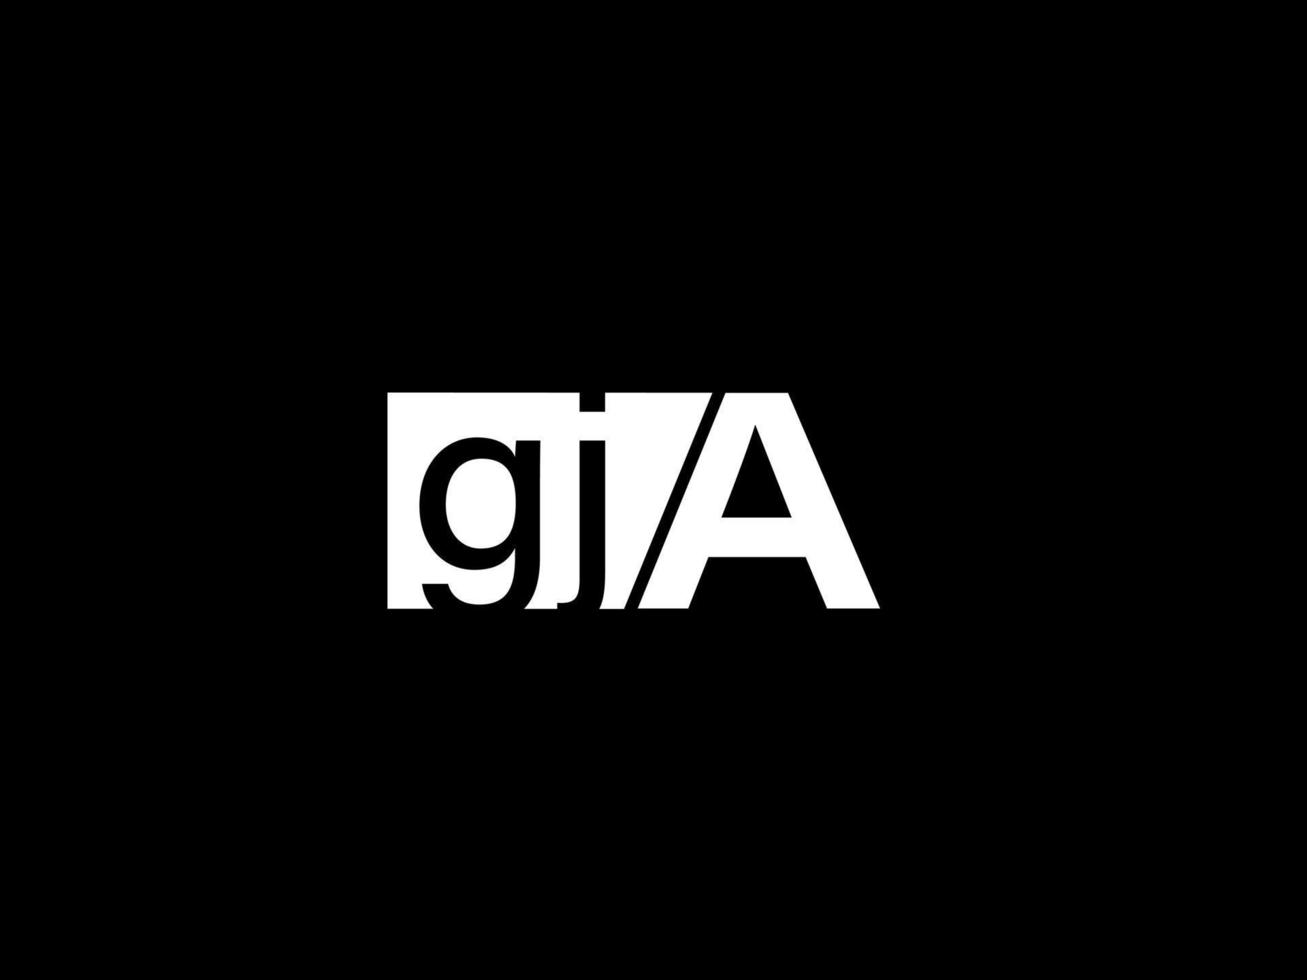 logotipo gja e arte vetorial de design gráfico, ícones isolados em fundo preto vetor